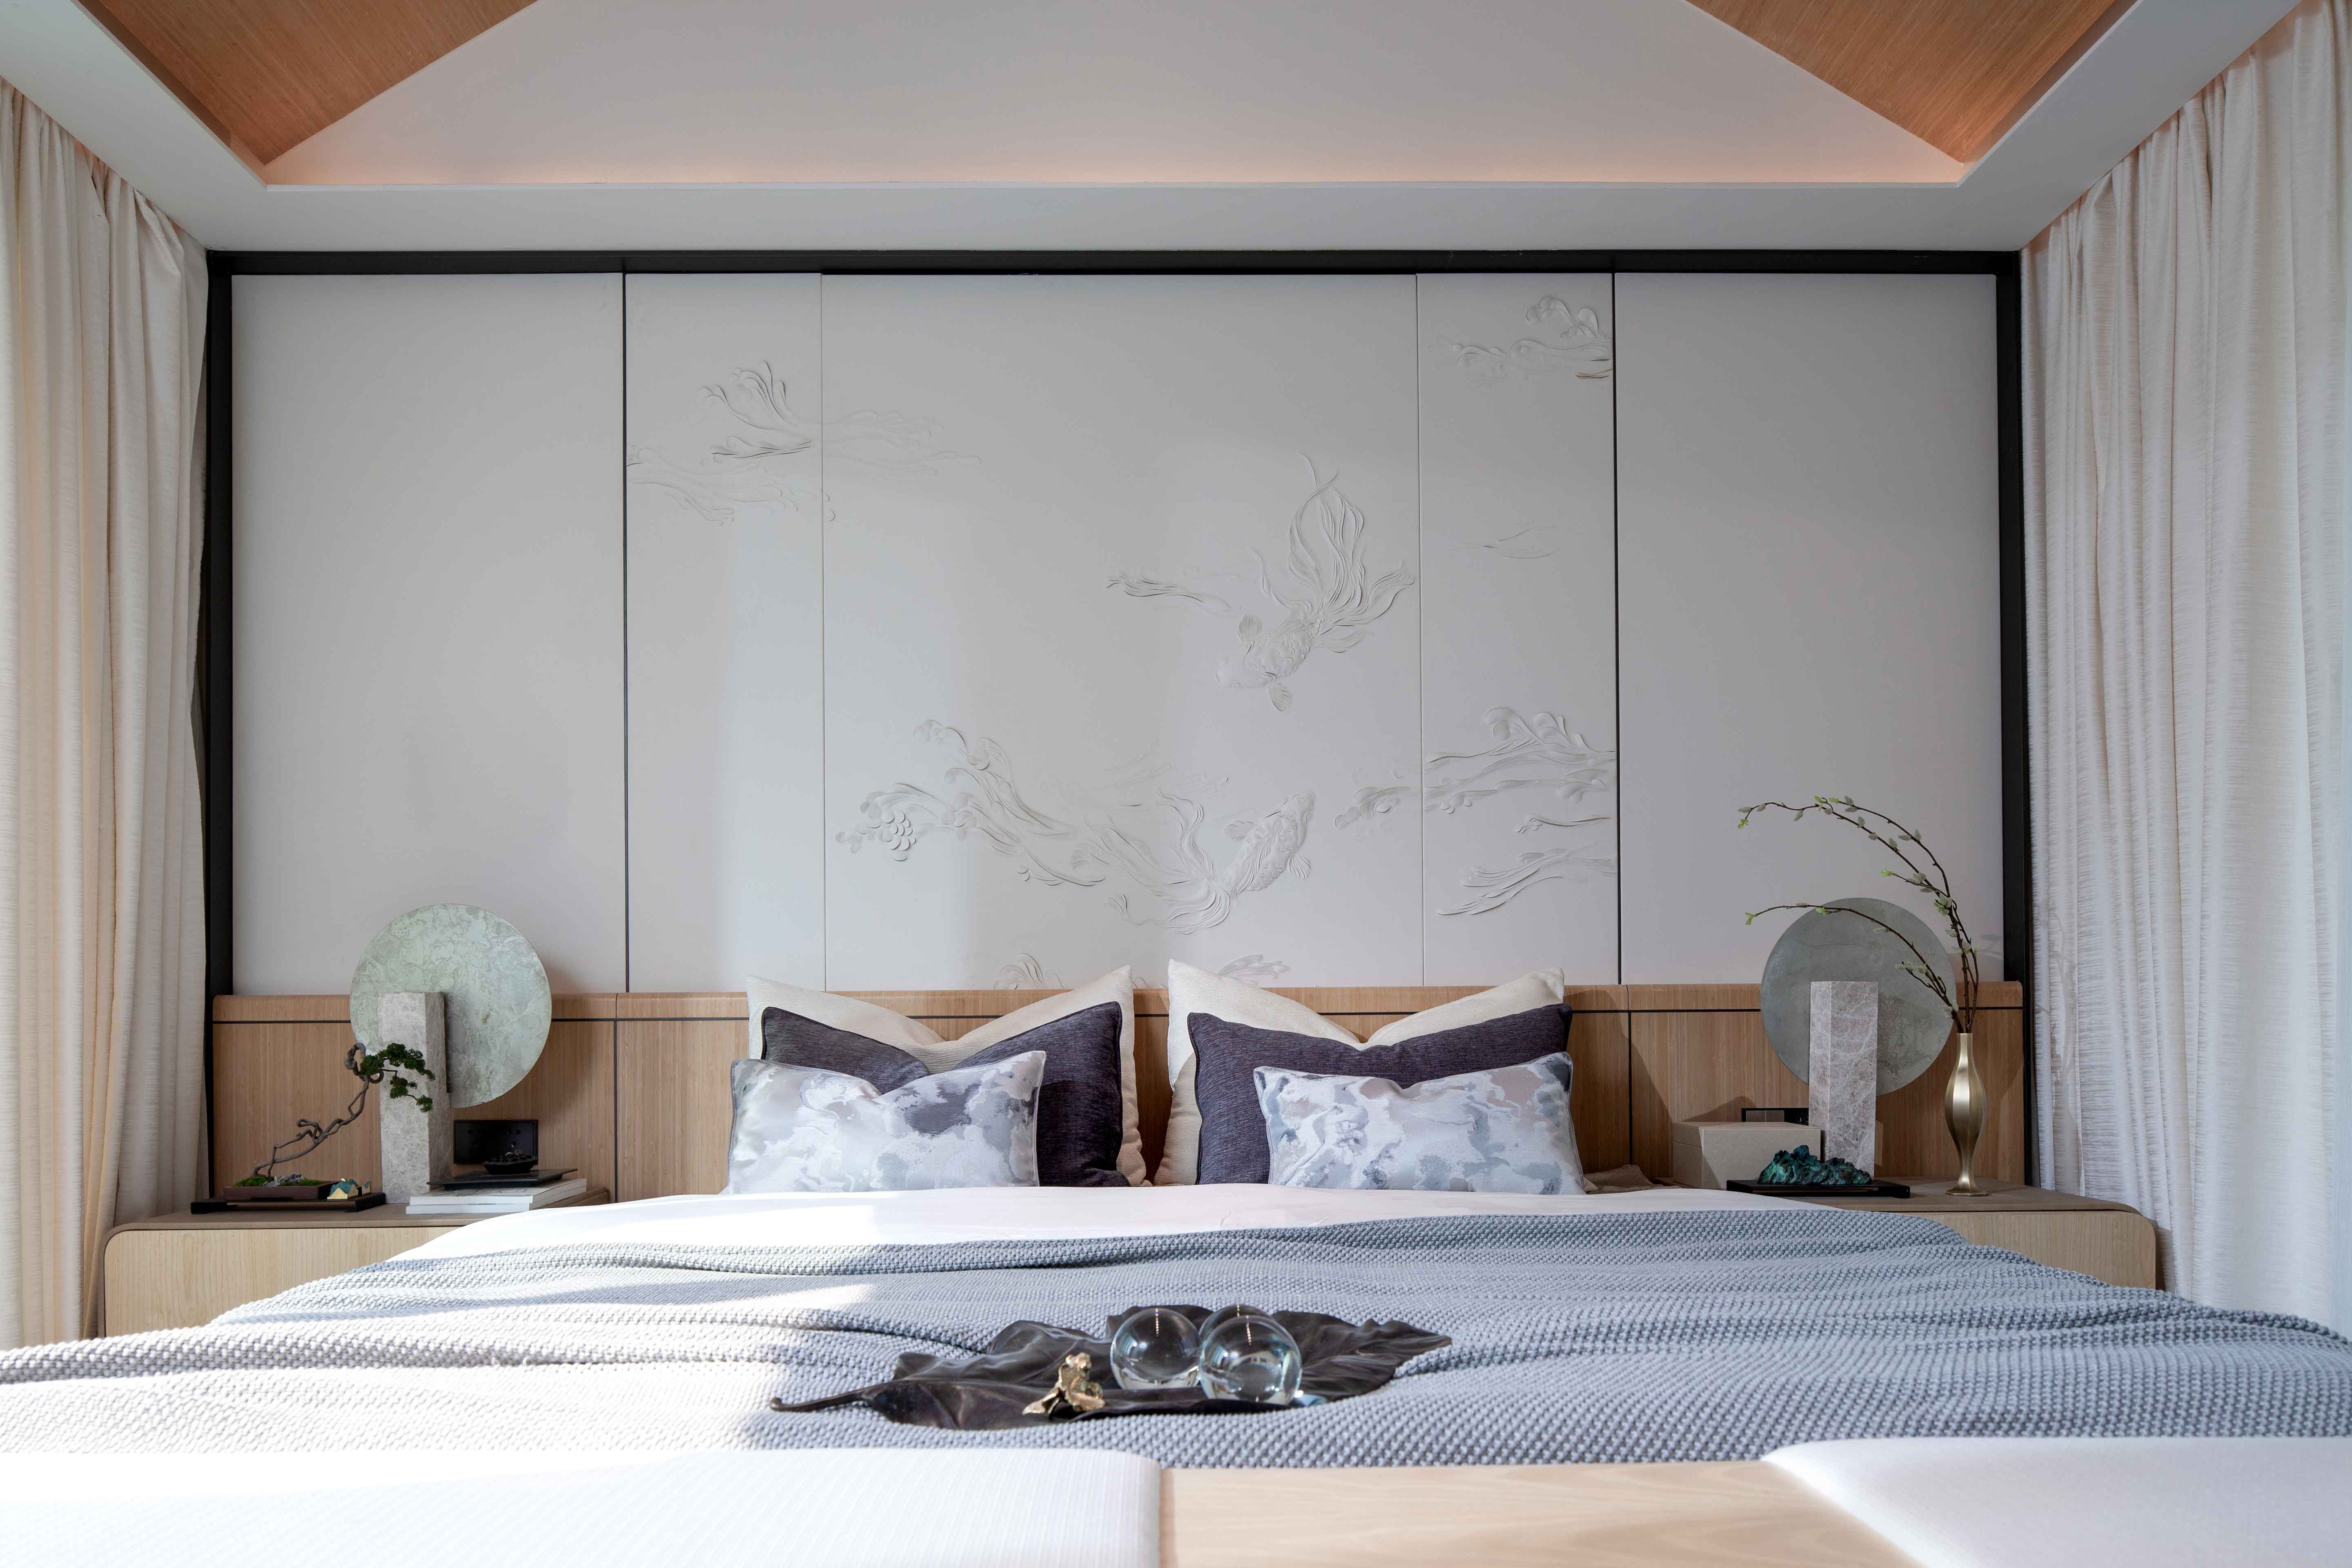 翰林国际三居室丨新中式装修案例欣赏